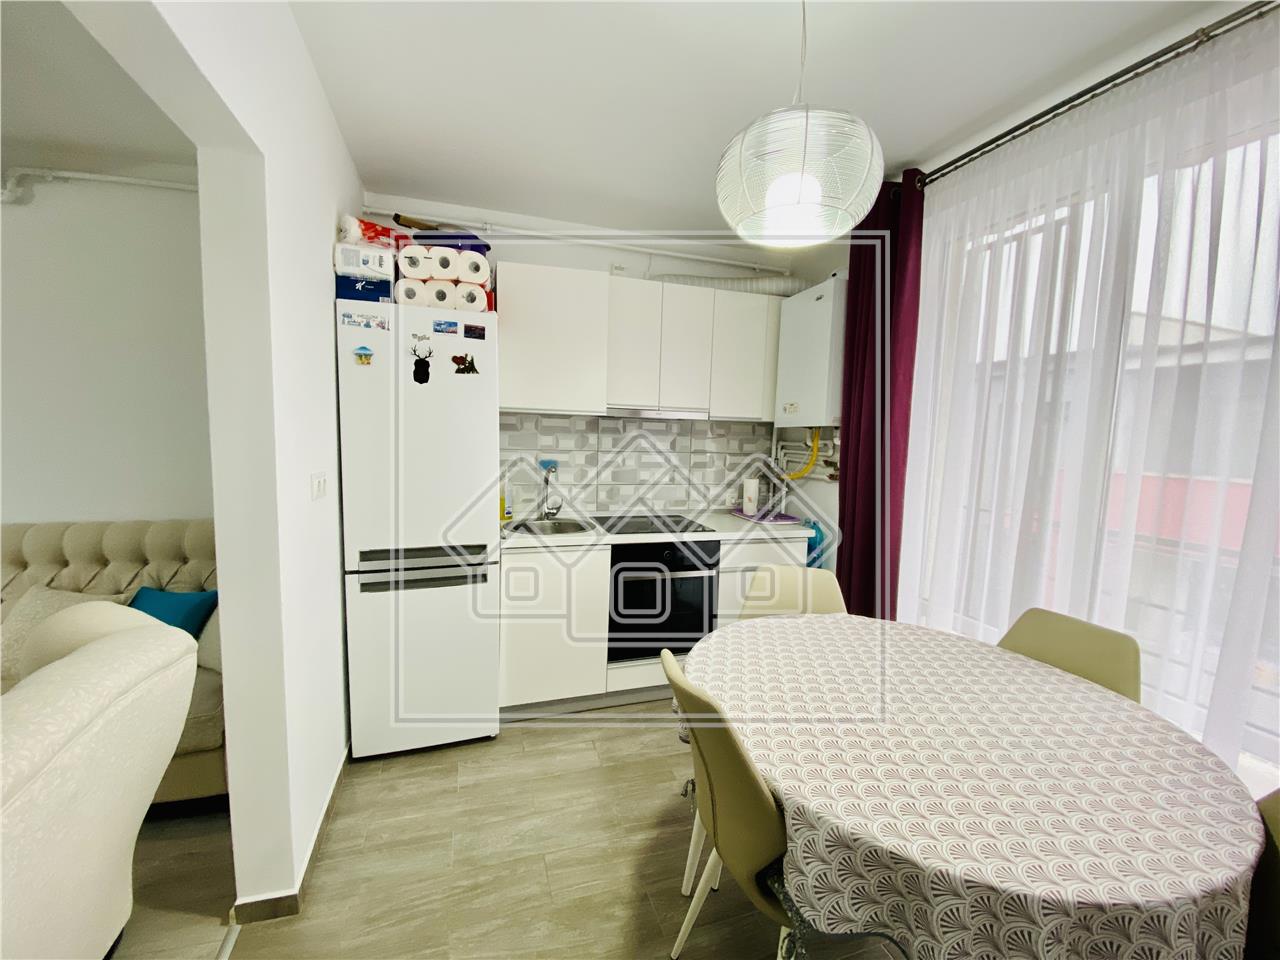 Apartament de vanzare in Sibiu -3 camere, 2 balcoane - C. Arhitectilor